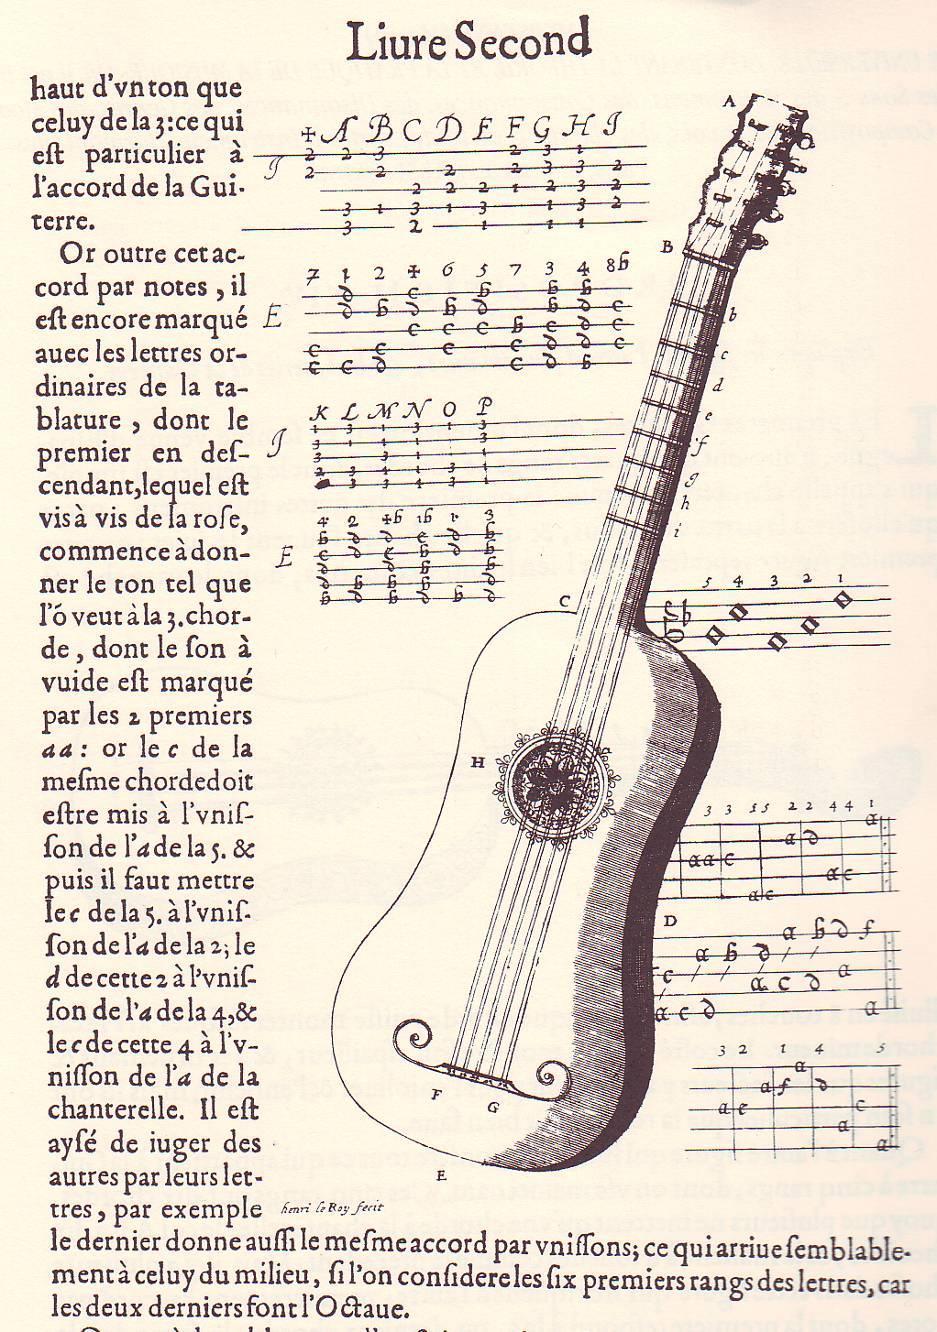 Guitarra con lazo cubriendo la boca. Harmonie Universelle. Marin Mersenne. París, 1636.